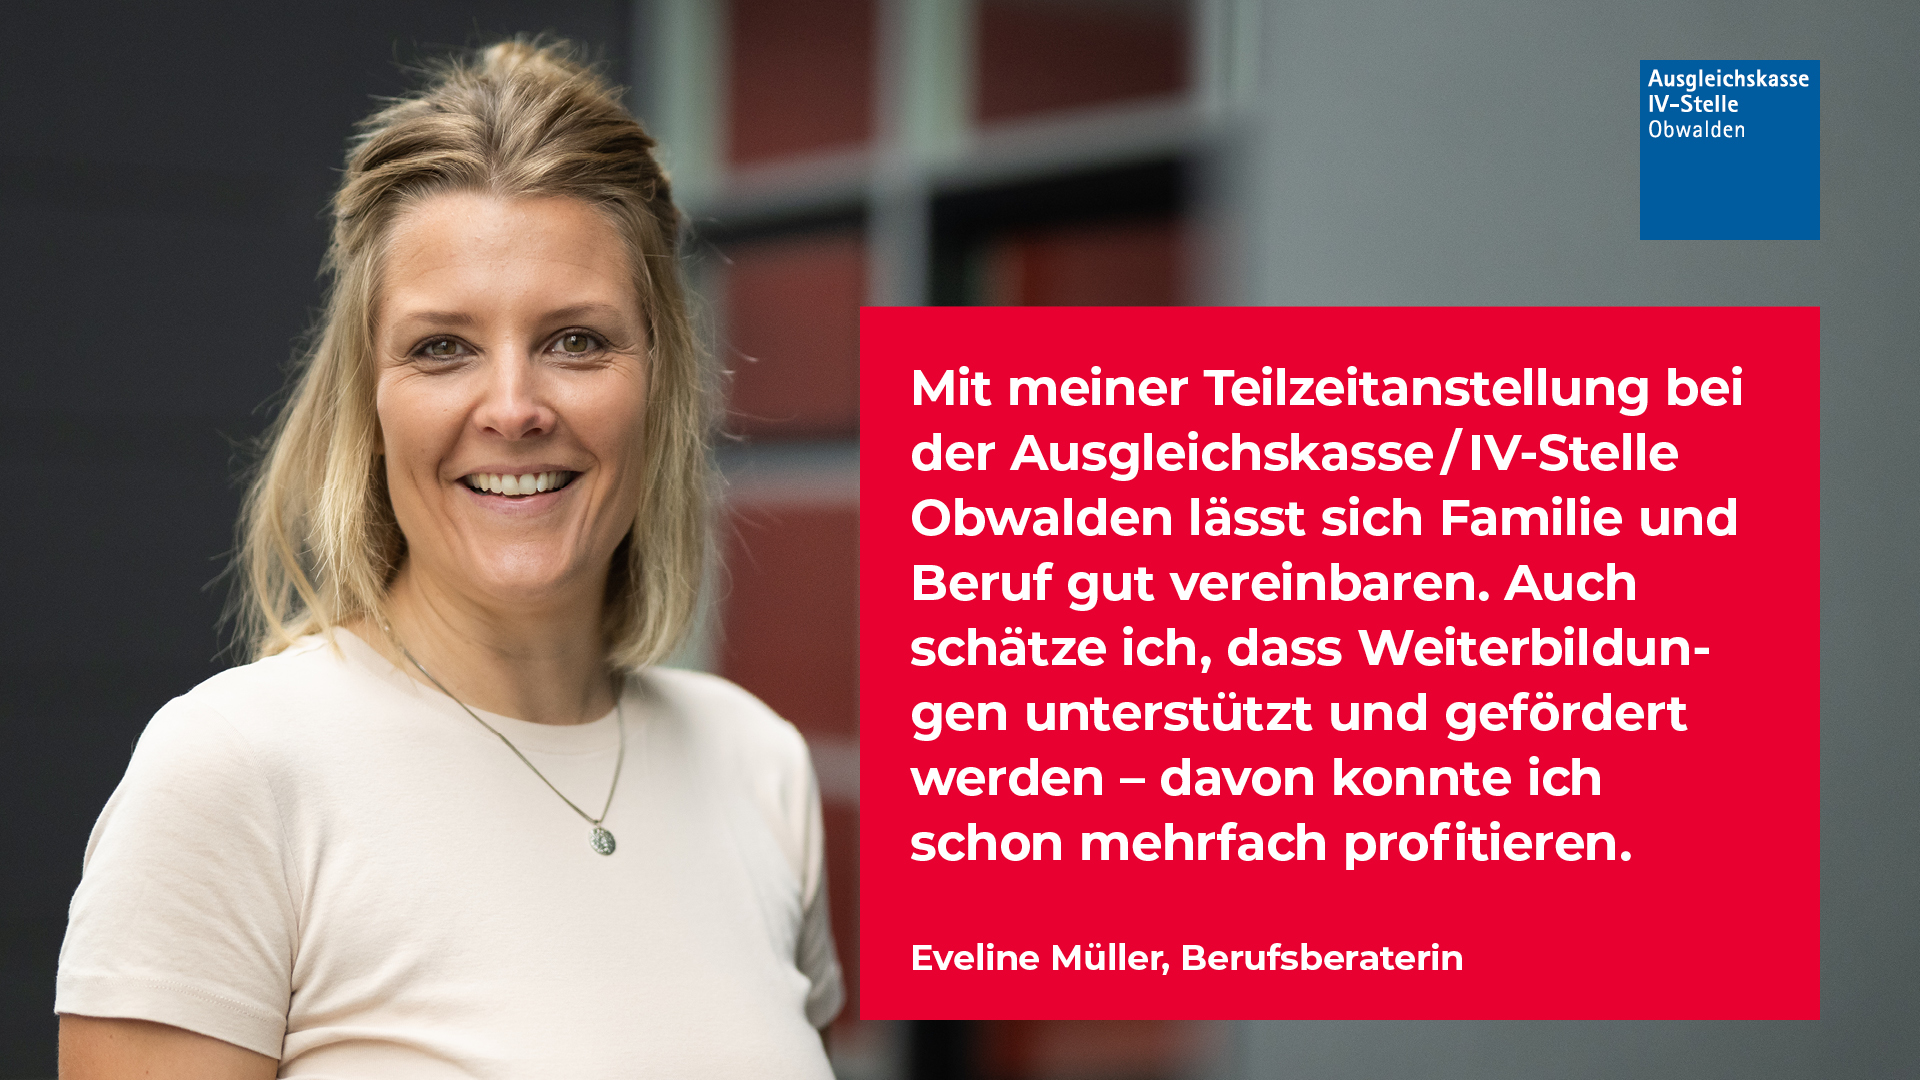 Eveline Müller, Berufsberaterin